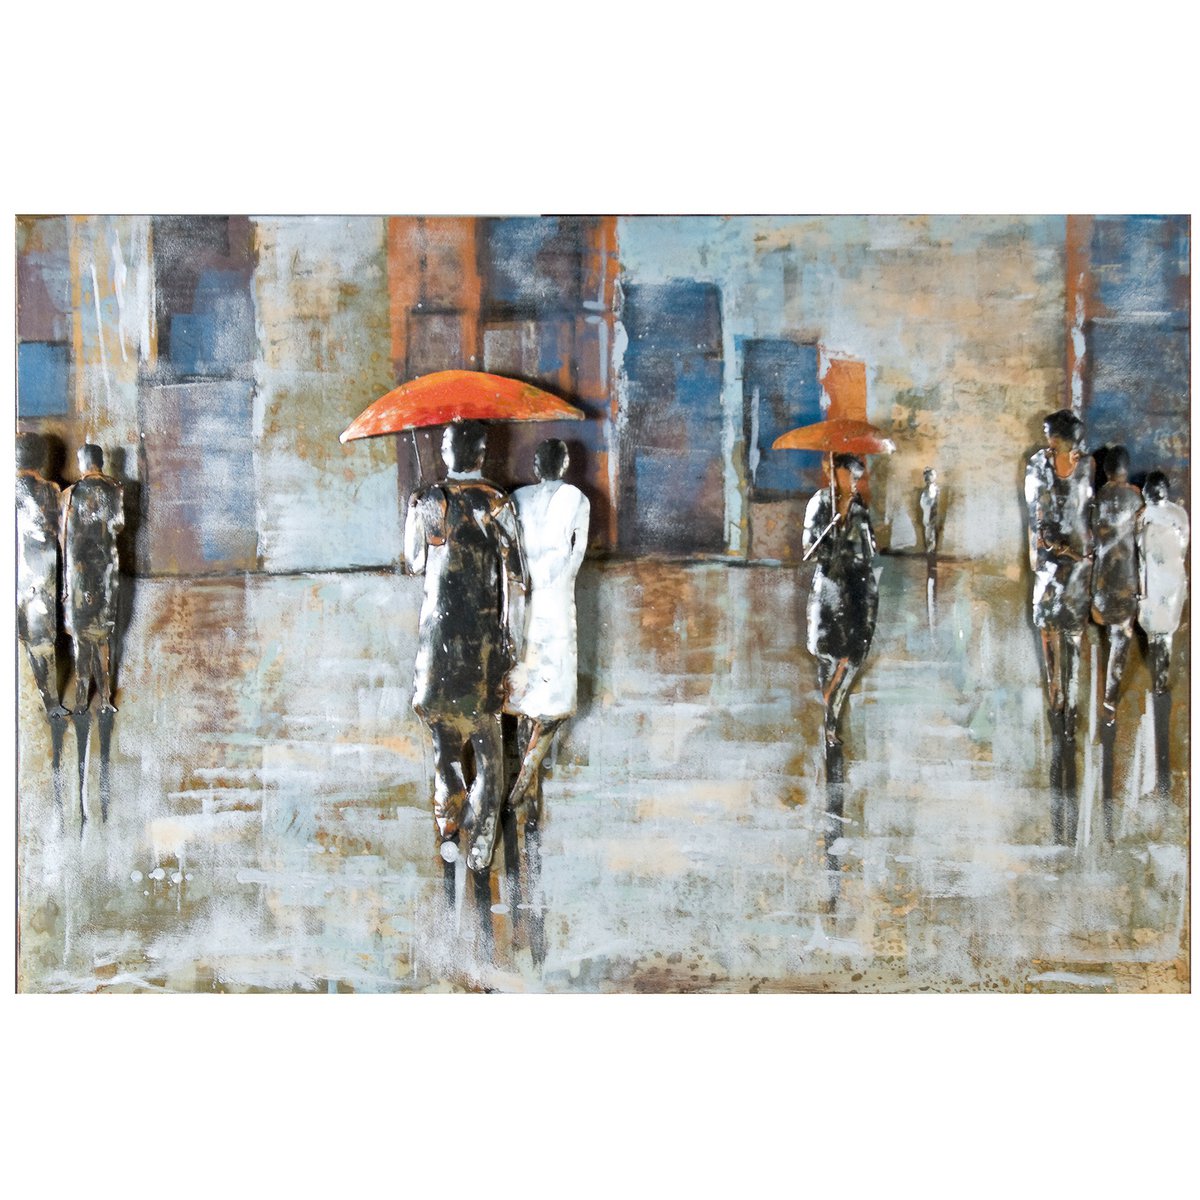 Gilde Wandbild Metall Bild Rainy Day 120x80cm Regen Regenschirm Gemälde